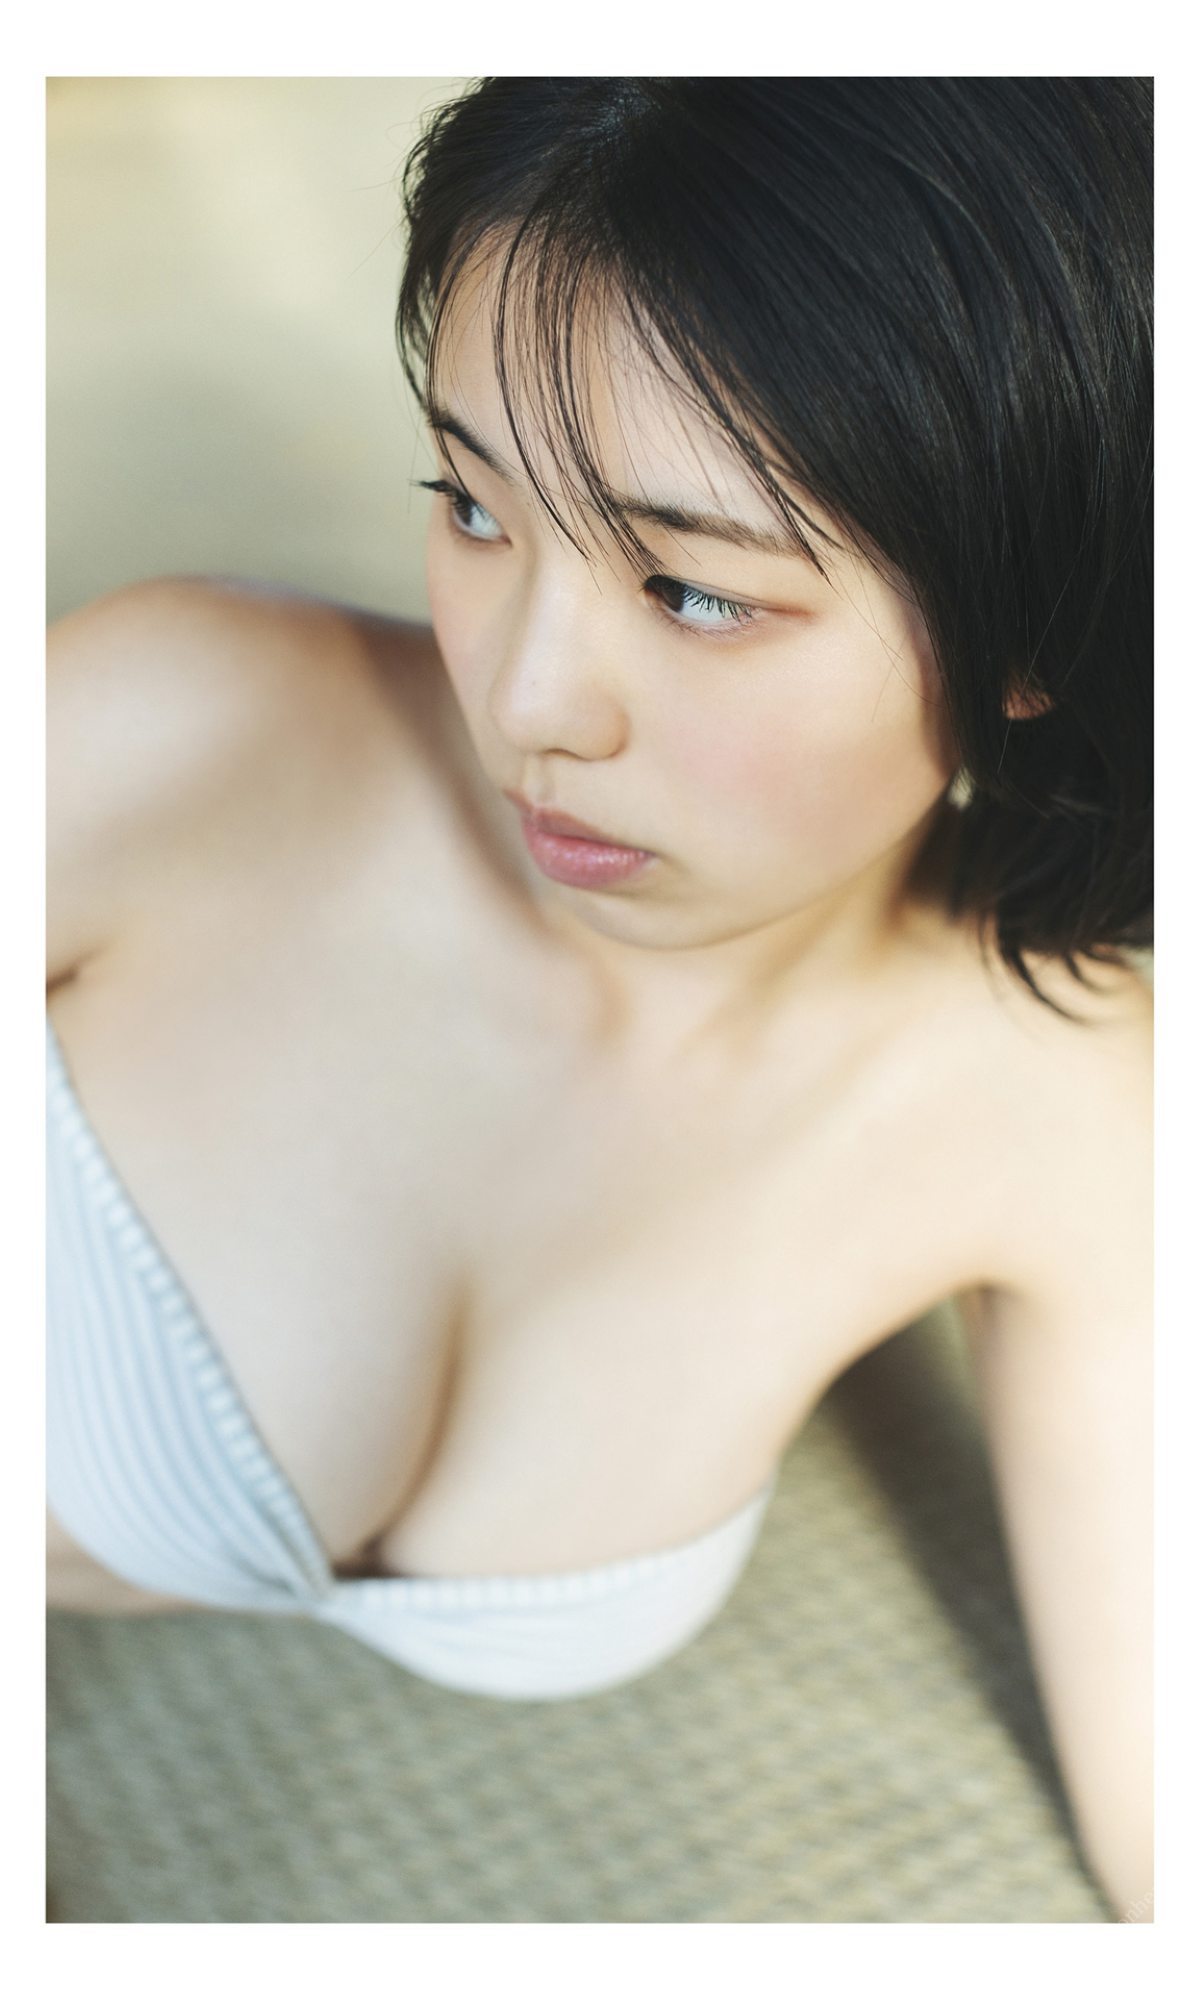 Weekly Photobook 2022 03 14 Hina Kikuchi 菊地姫奈 Harumeku honomeku 春めく、ほのめく 0050 2586548709.jpg